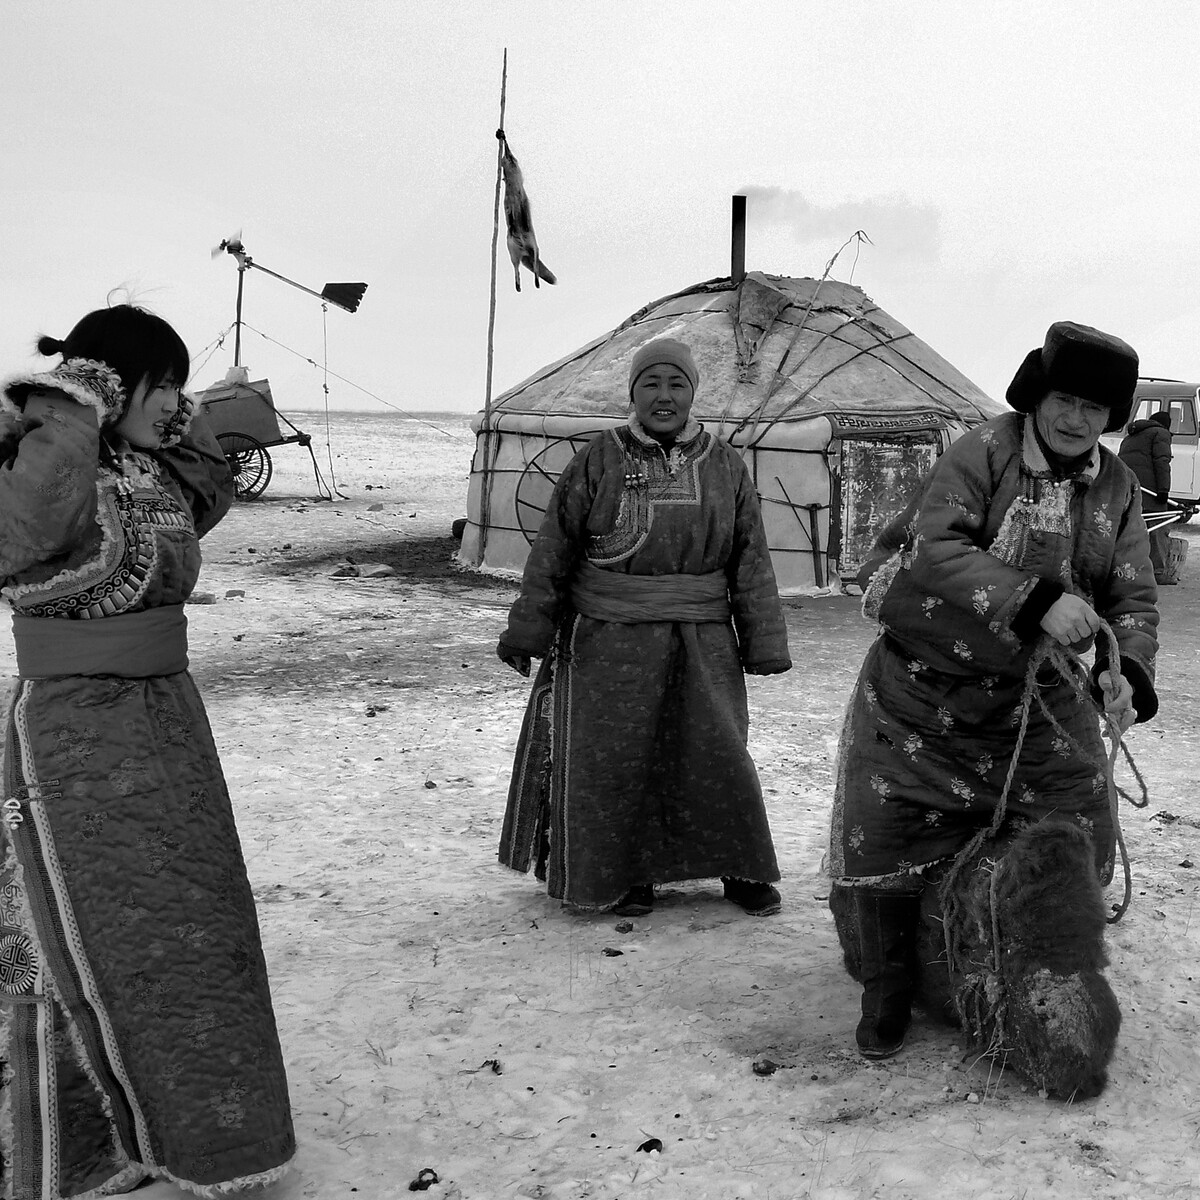 2006年11月拍摄于内蒙古锡林郭勒盟草原储备冬季食物